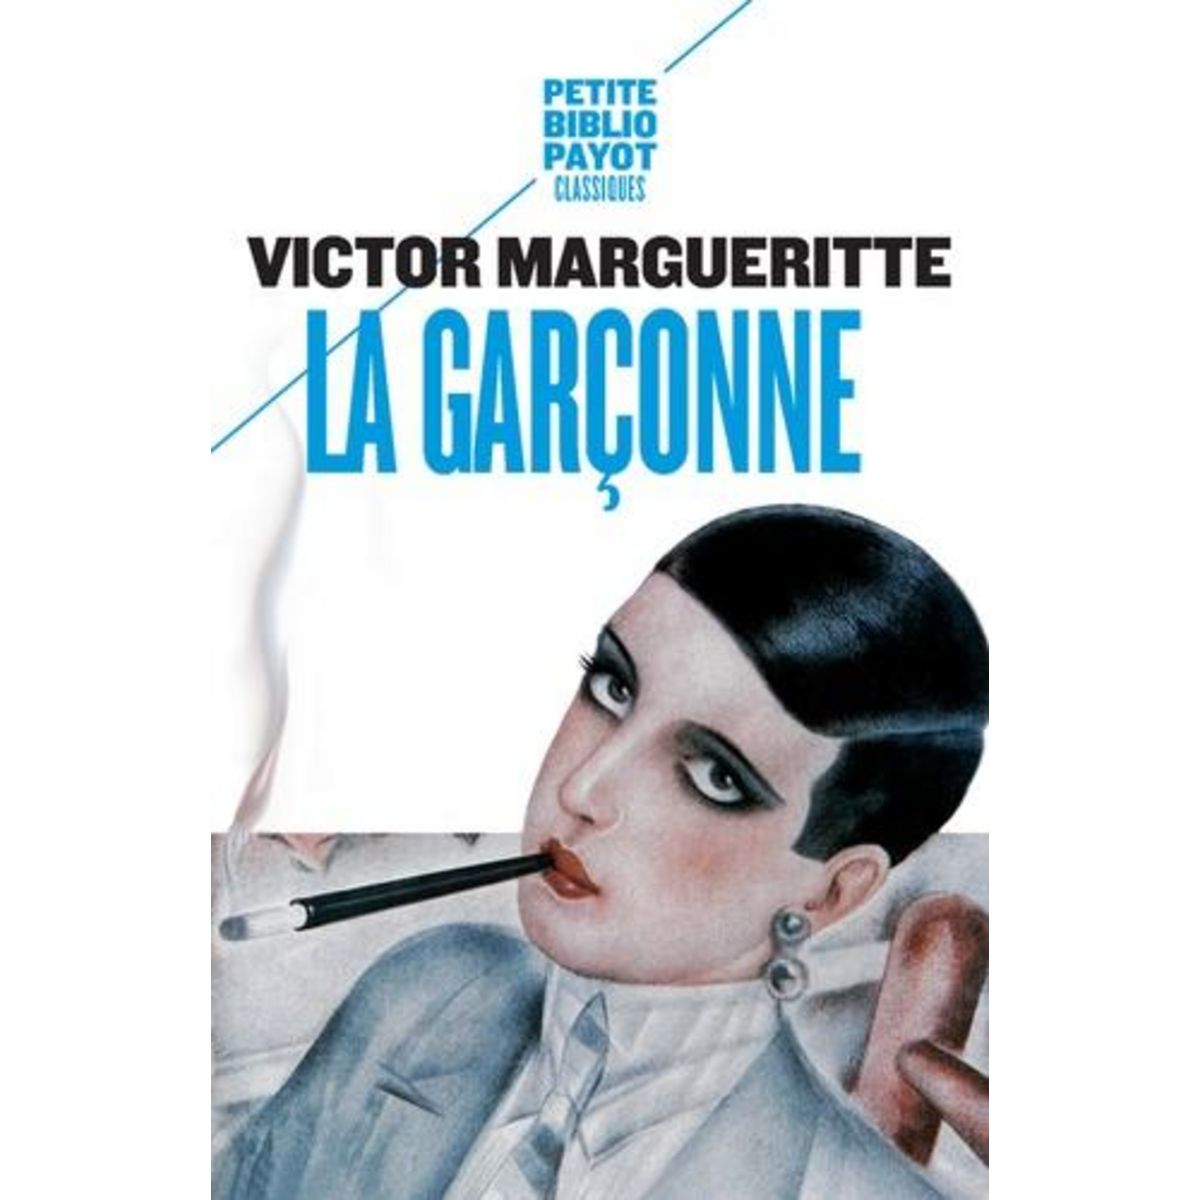 LA GARCONNE, Margueritte Victor pas cher - Auchan.fr